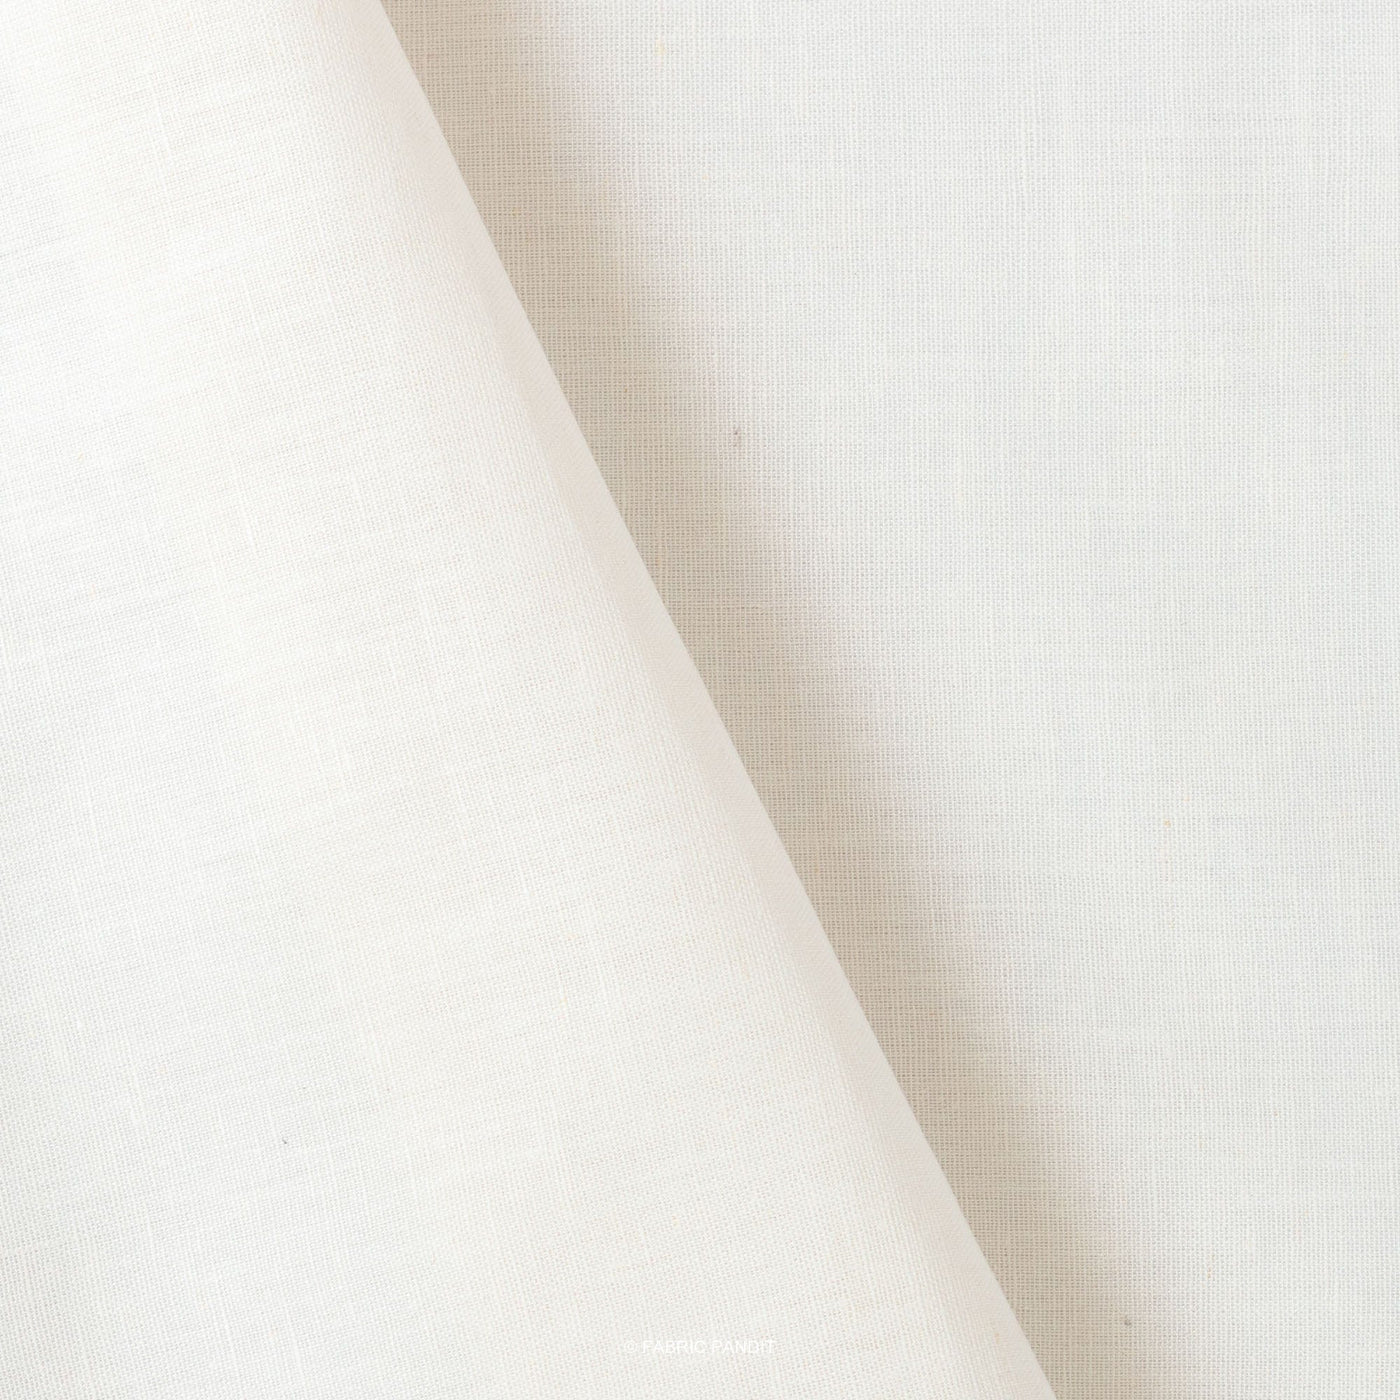 Cotton Linen Kurta Set Kurta Set Off White Colour | Pure Cotton Linen Fabric (3 Meters) | and Cotton Pyjama (2.5 Meters) | Unstitched Combo Set